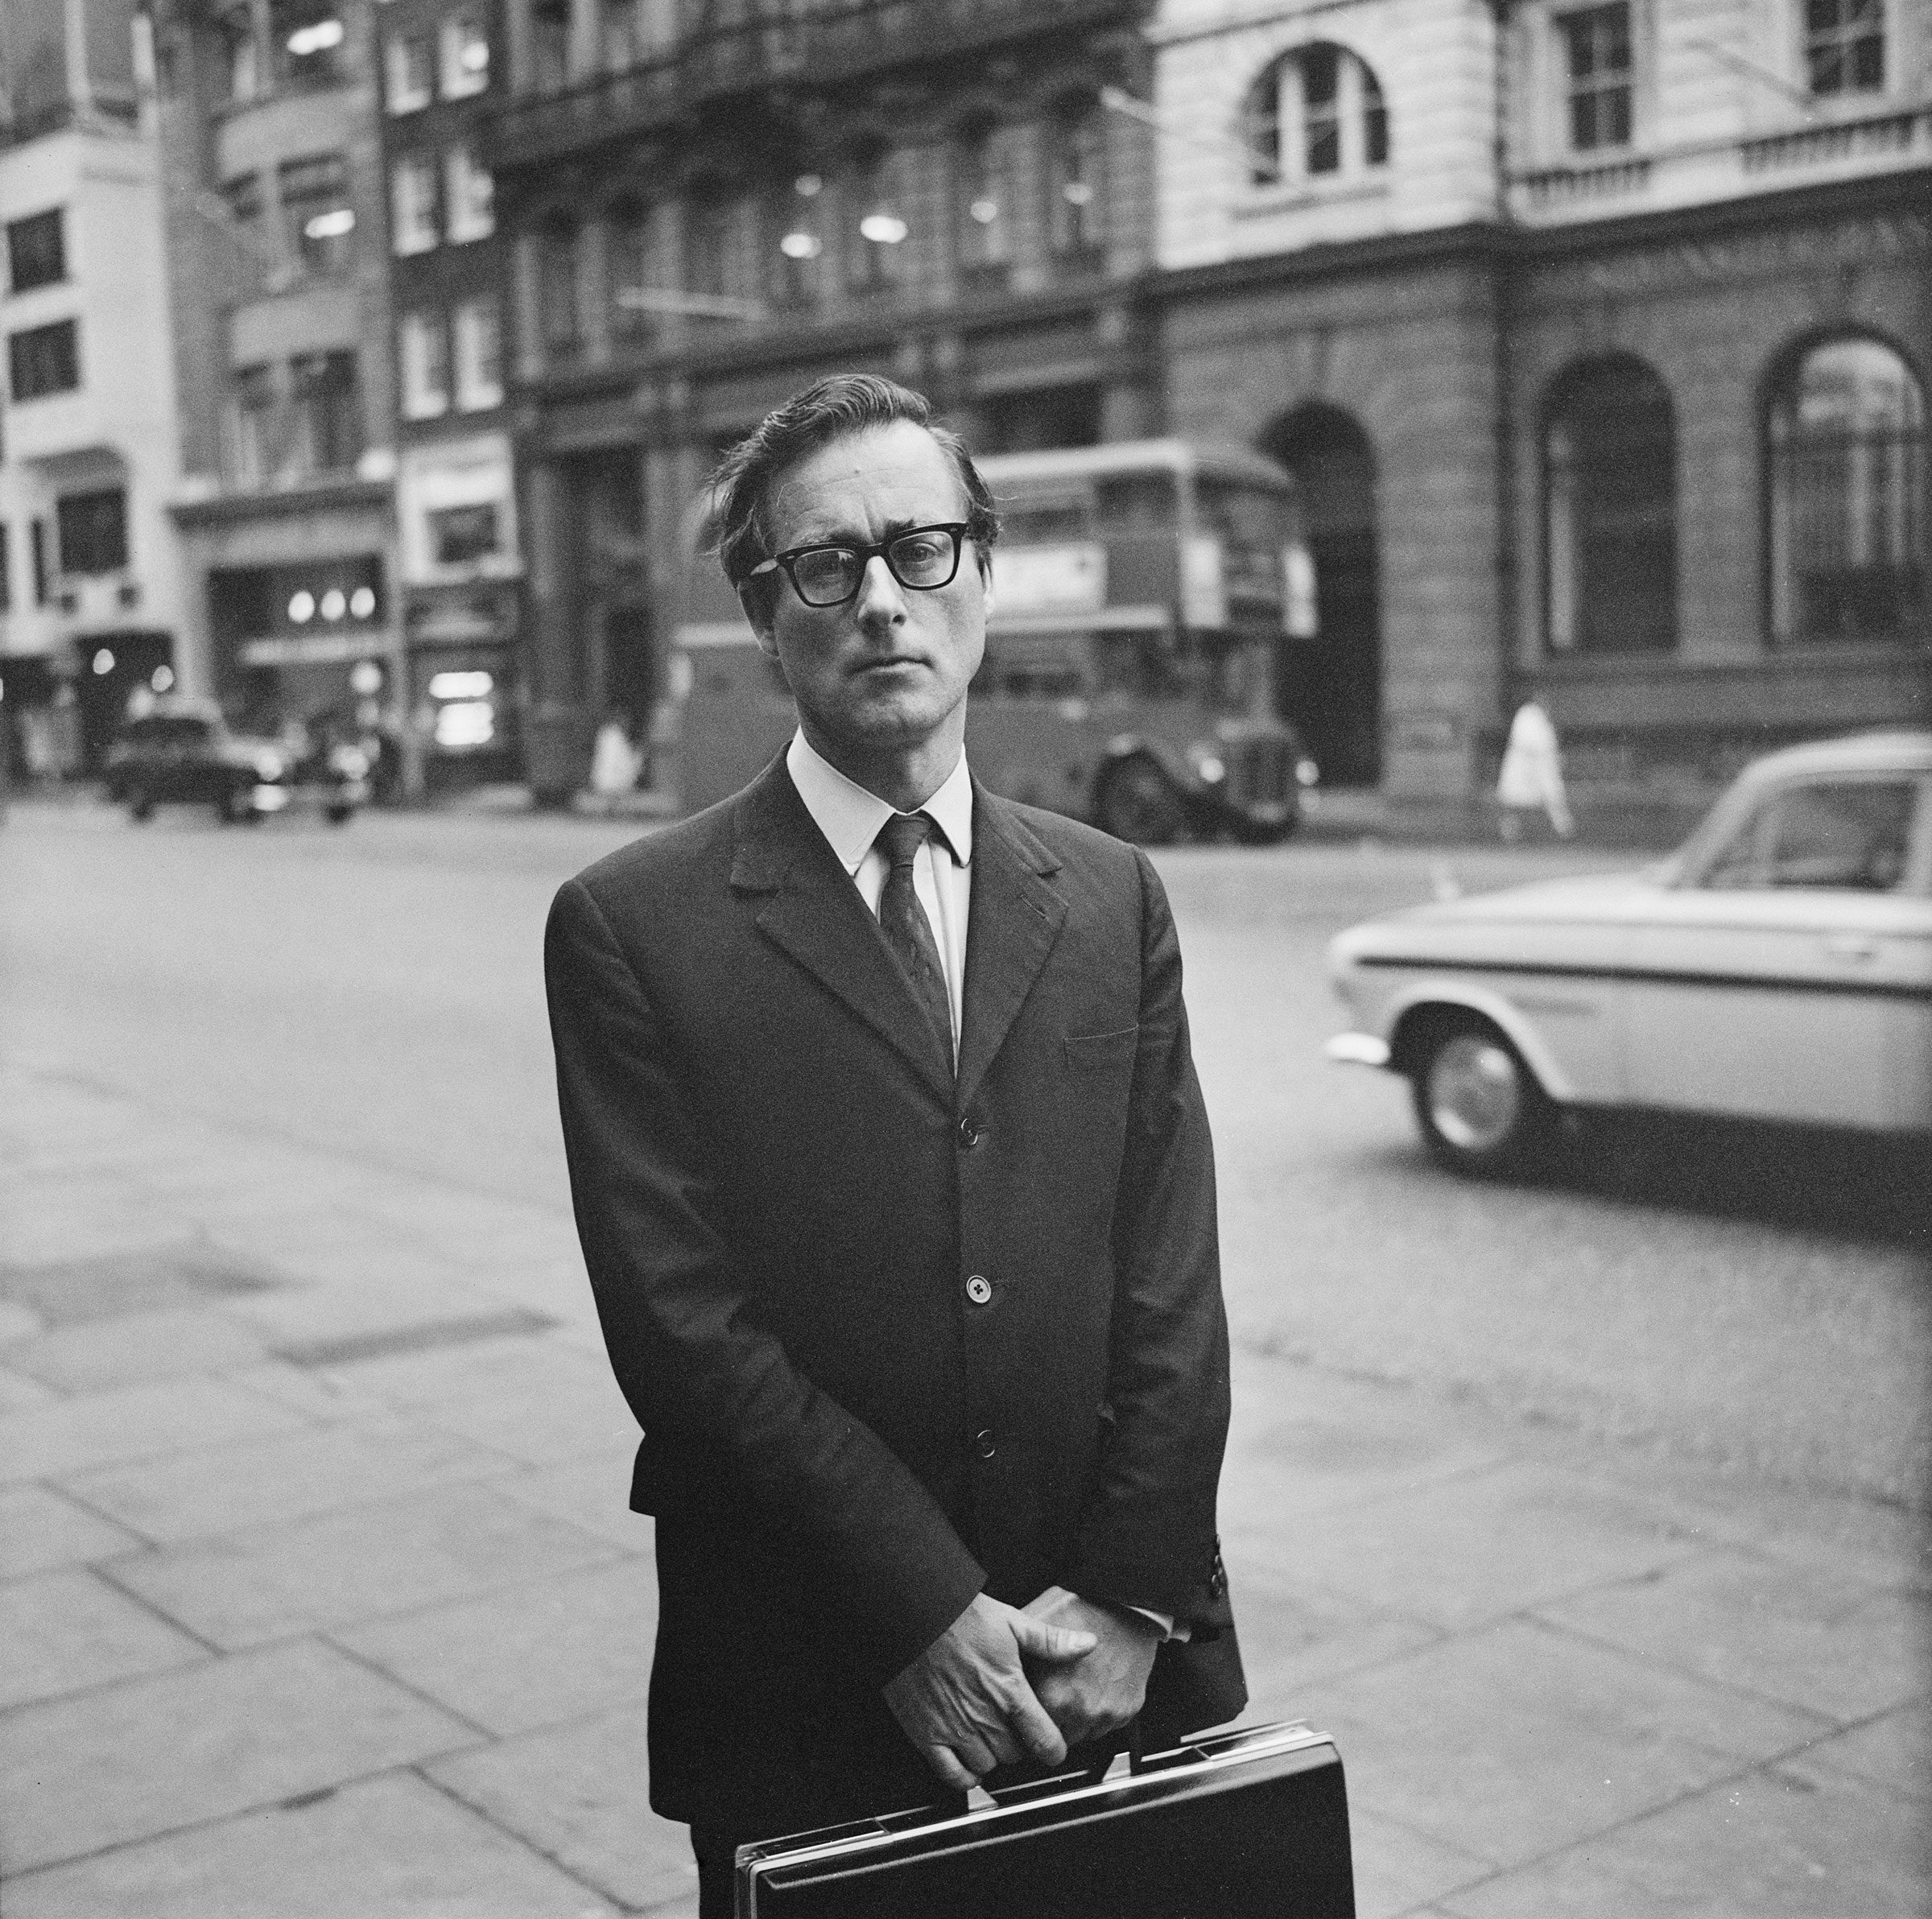 Evans in London, September 1968.